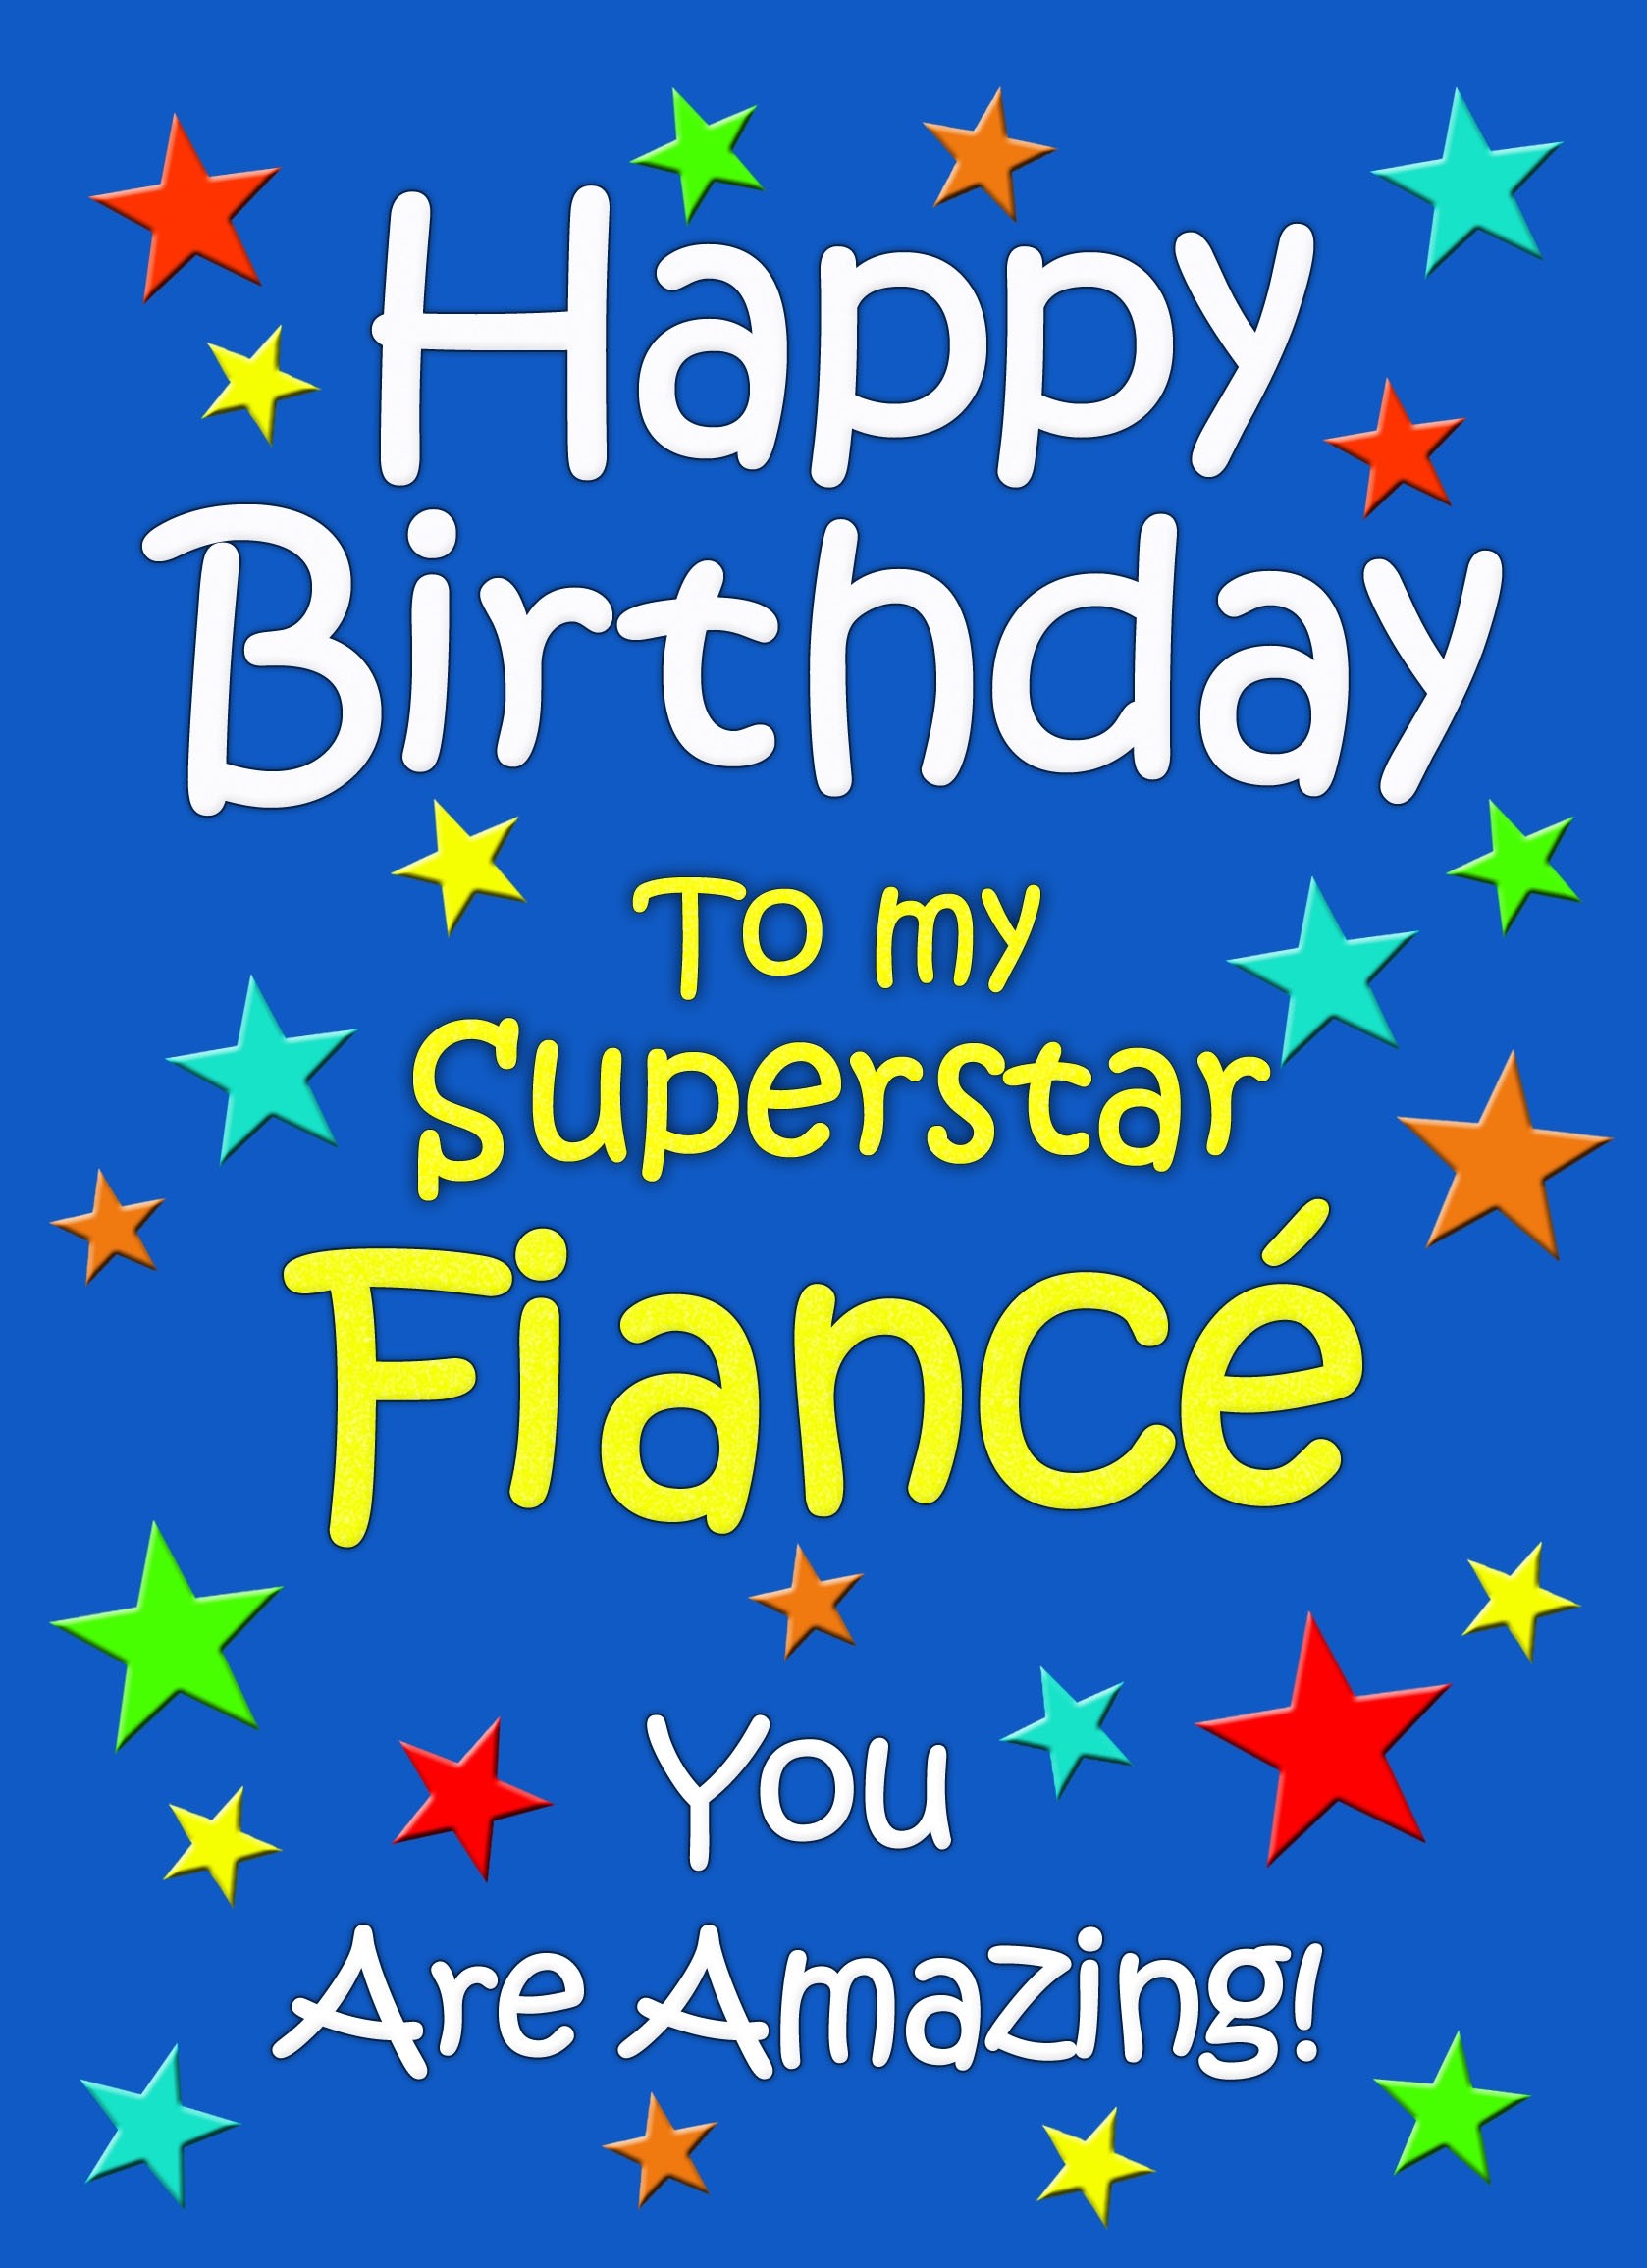 Fiance Birthday Card (Blue)